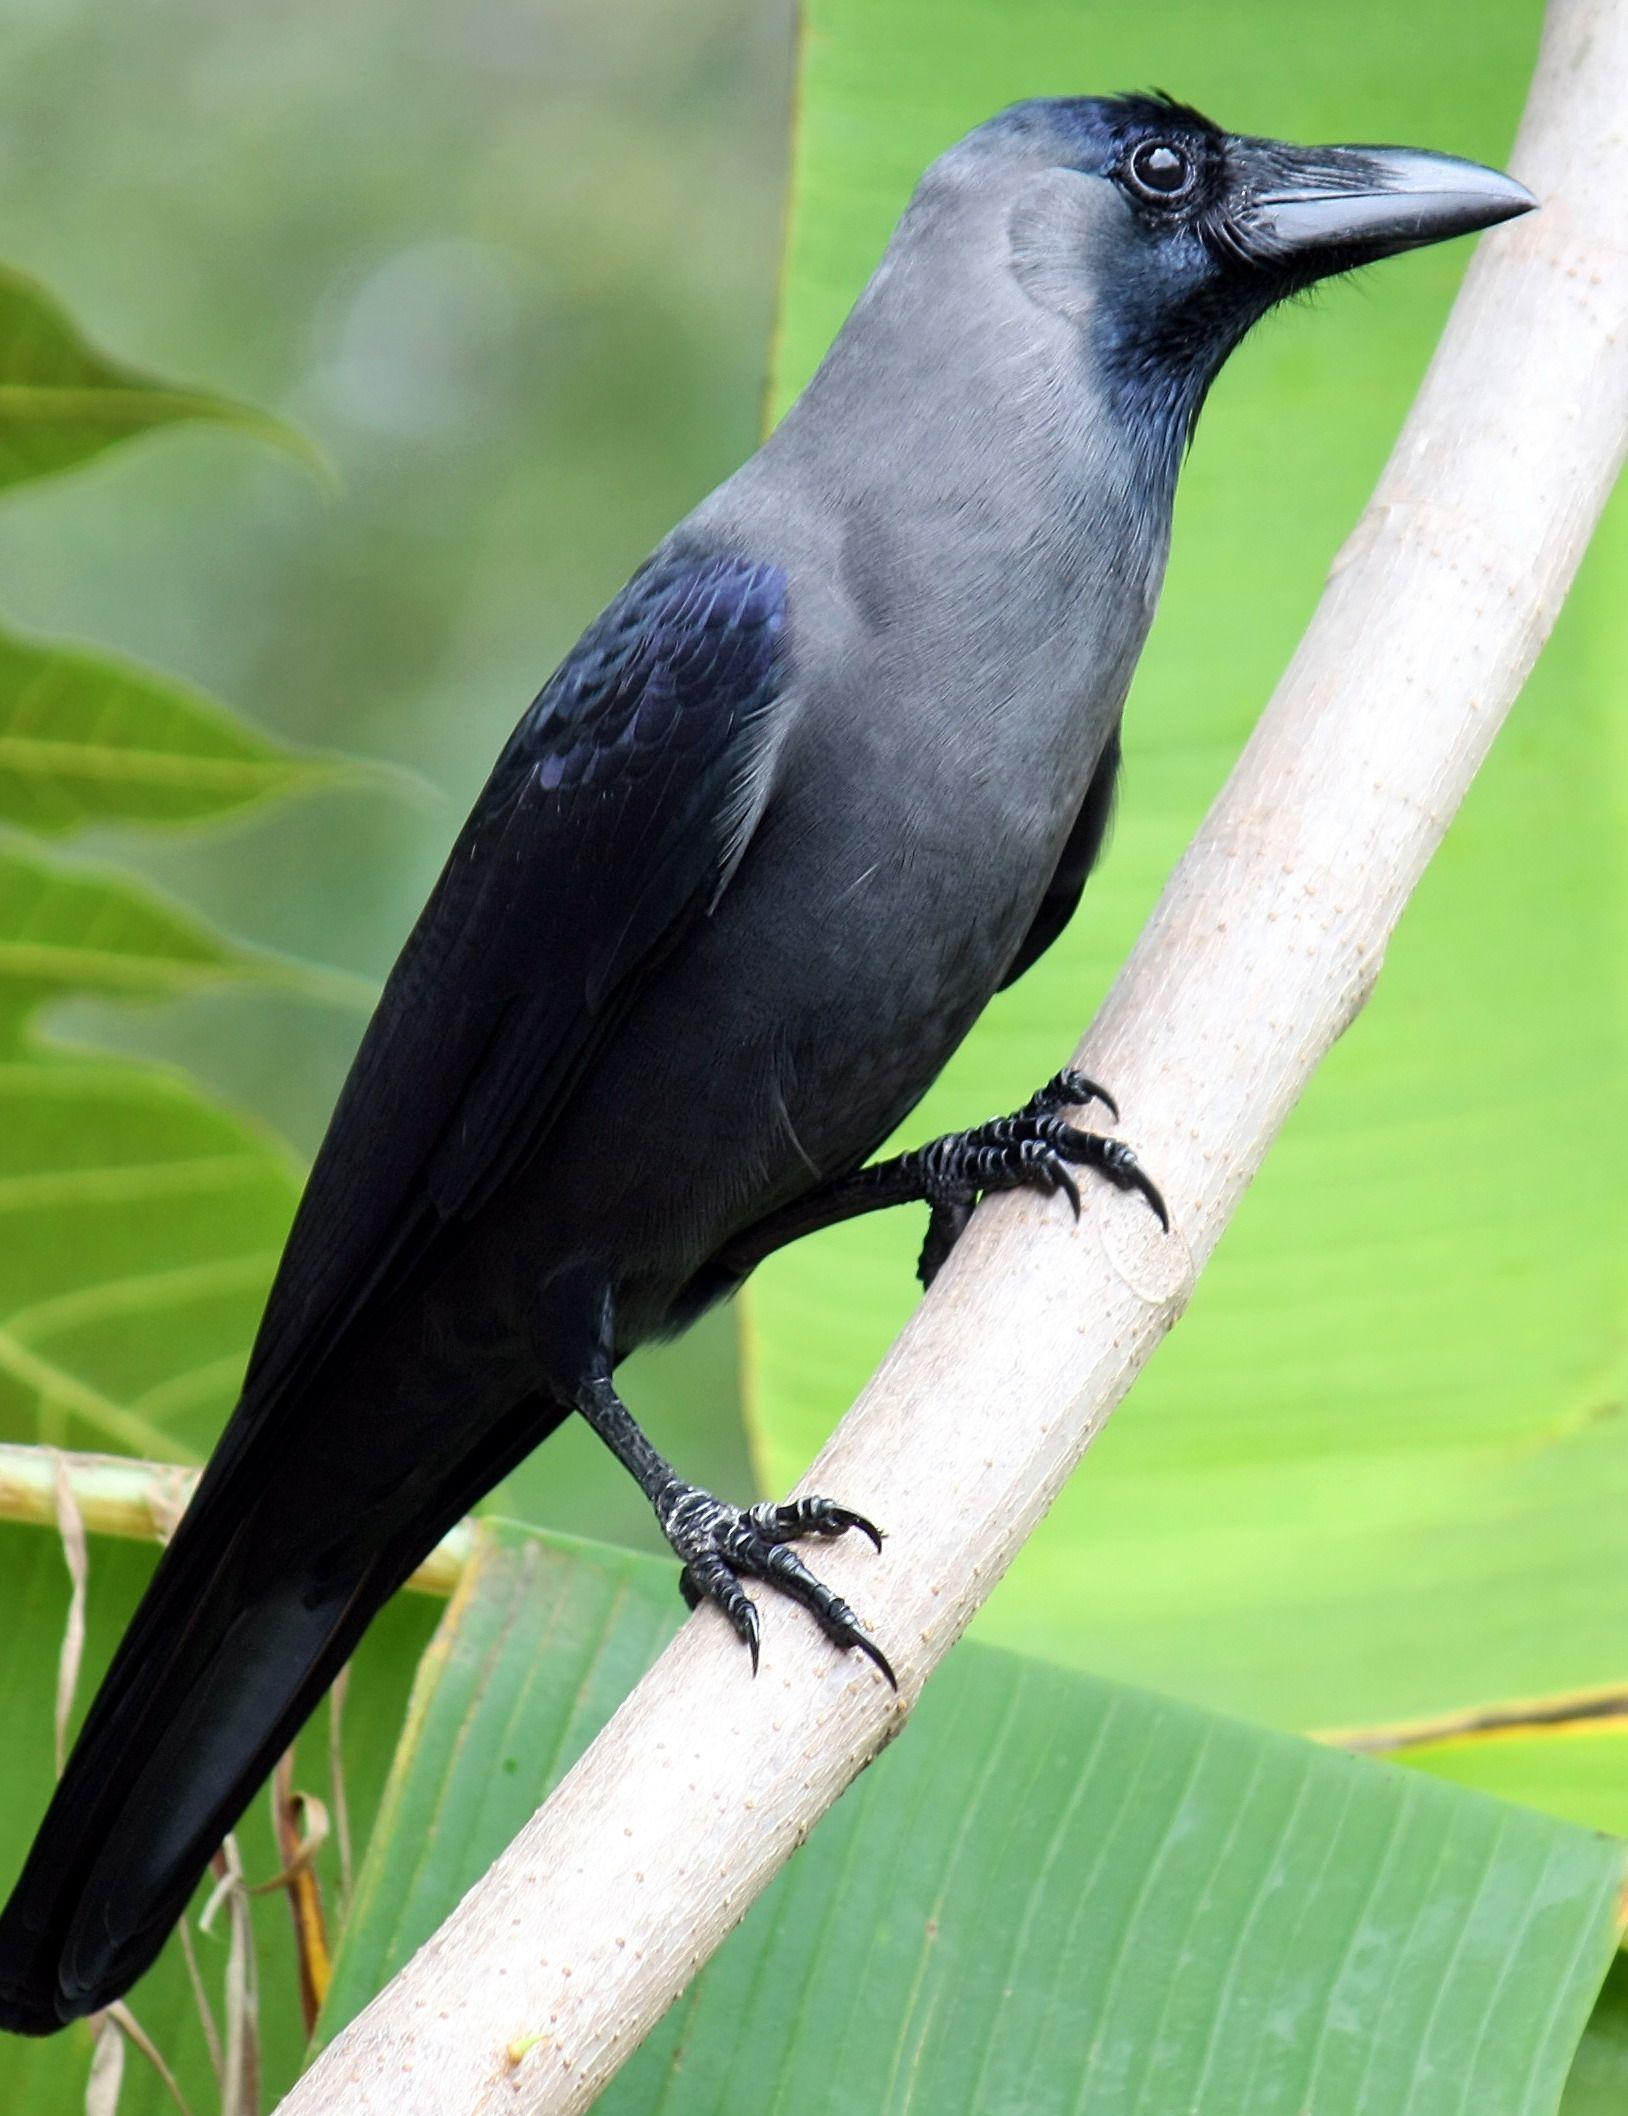 Cuervos Bird Logo - El cuervo casero o cuervo indio (Corvus splendens) es una especie de